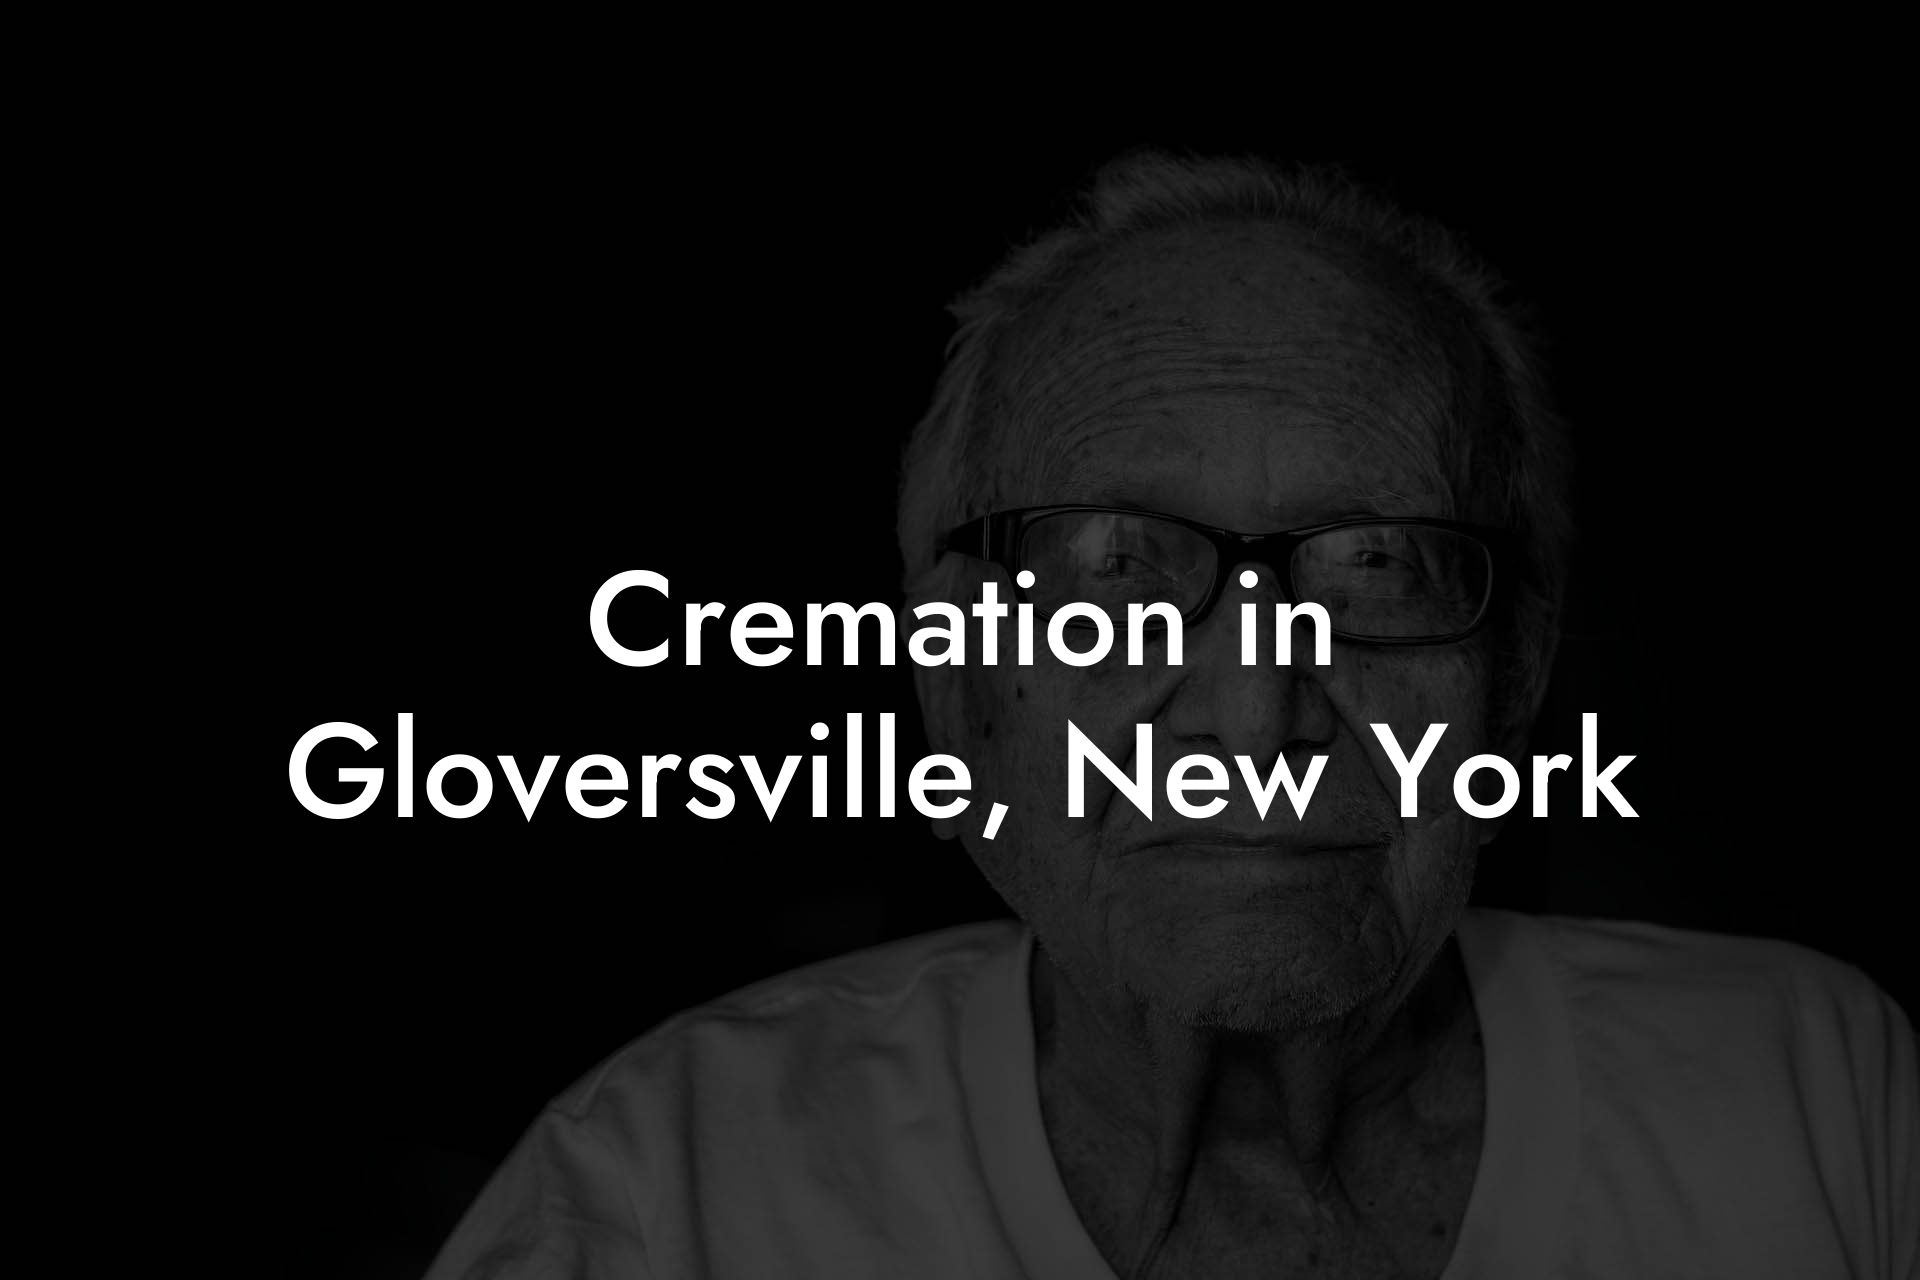 Cremation in Gloversville, New York